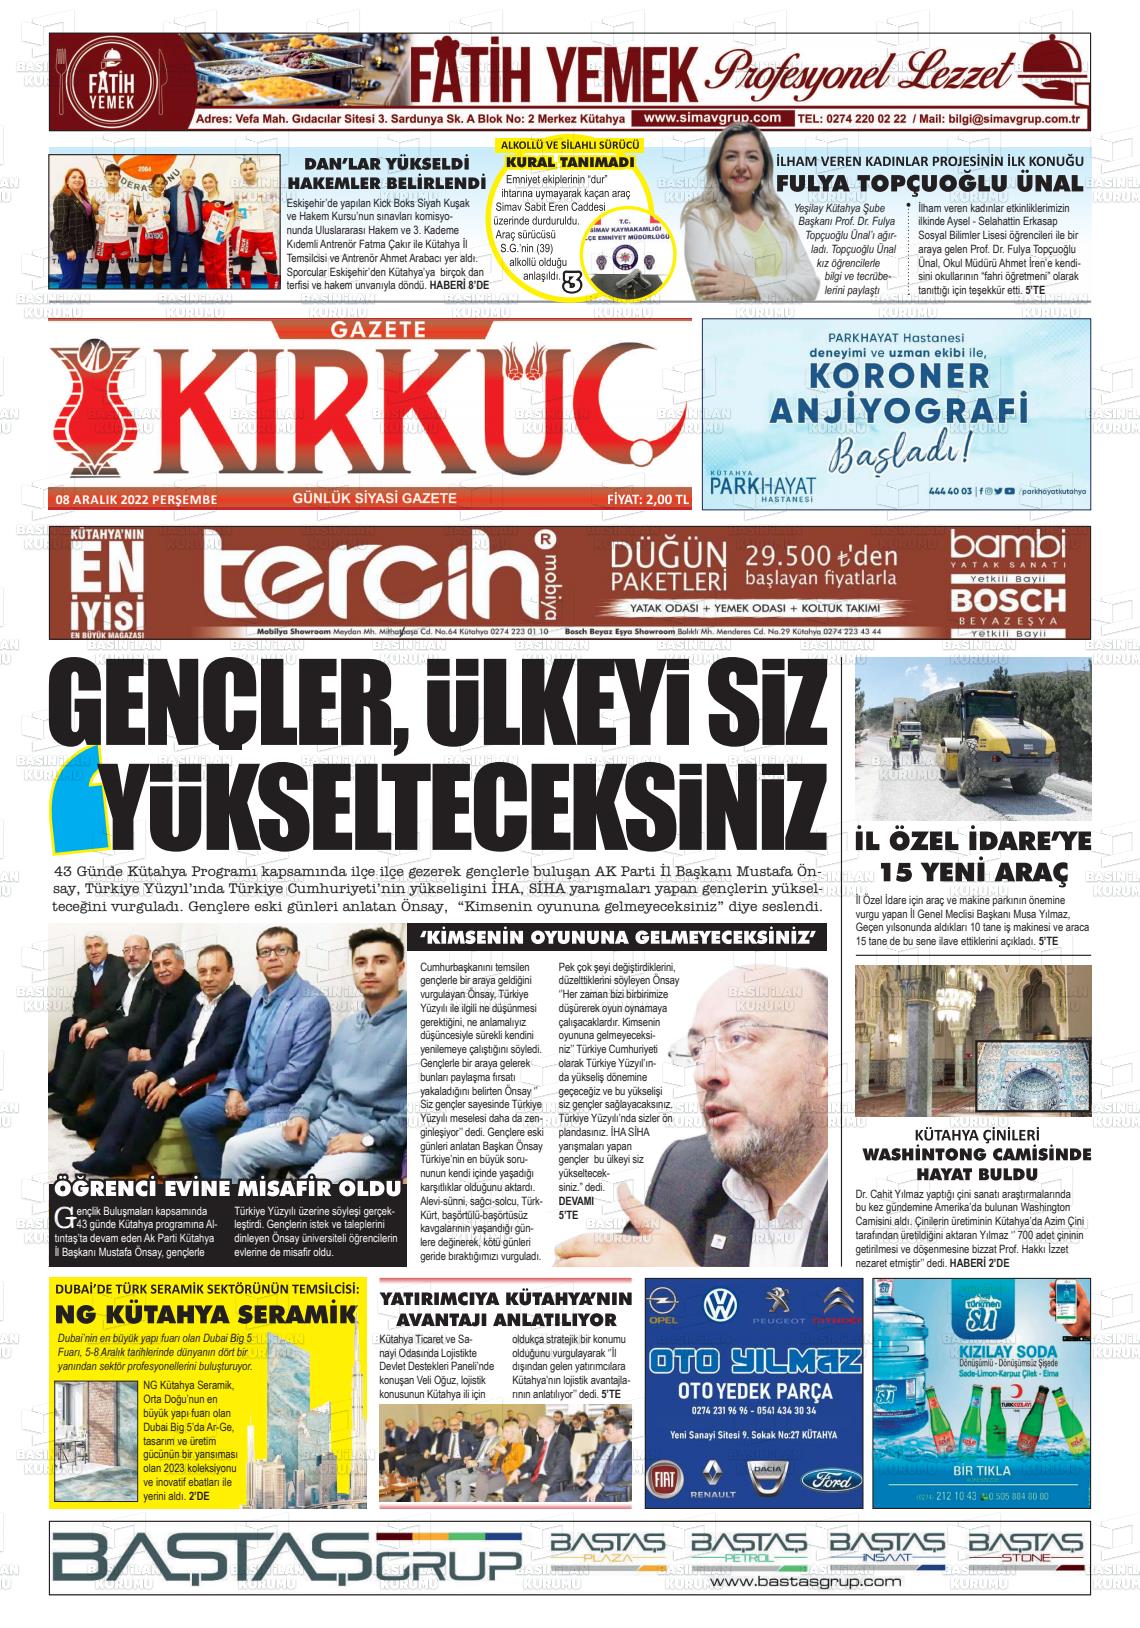 08 Aralık 2022 Gazete Kırküç Gazete Manşeti